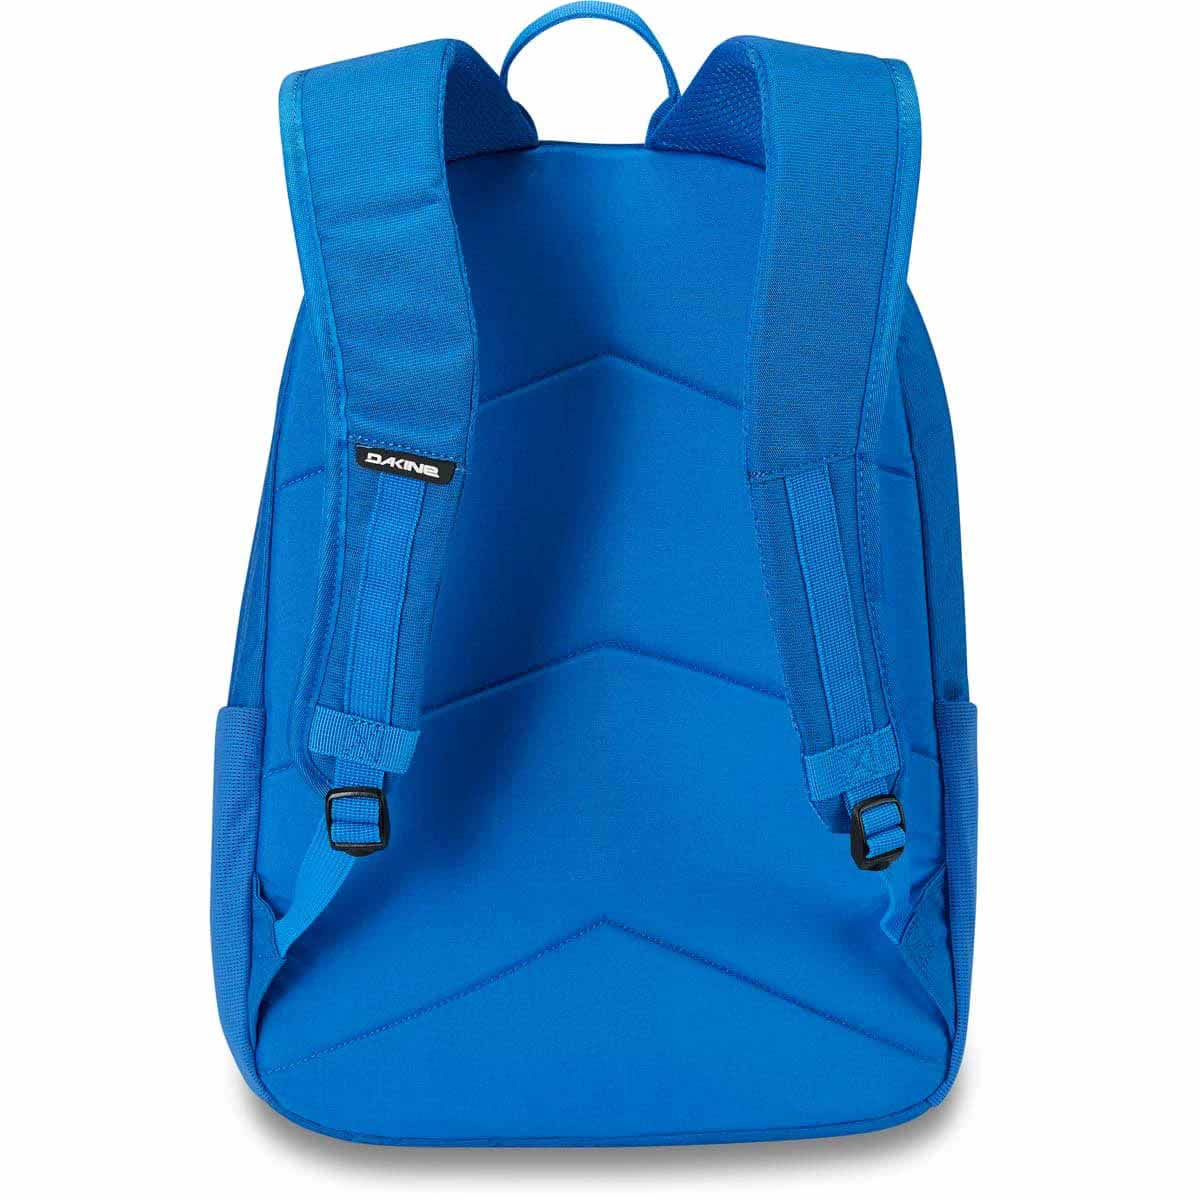 Dakine Essentials Pack 22L Backpack - Cobalt Blue - Backpack by Dakine 22L